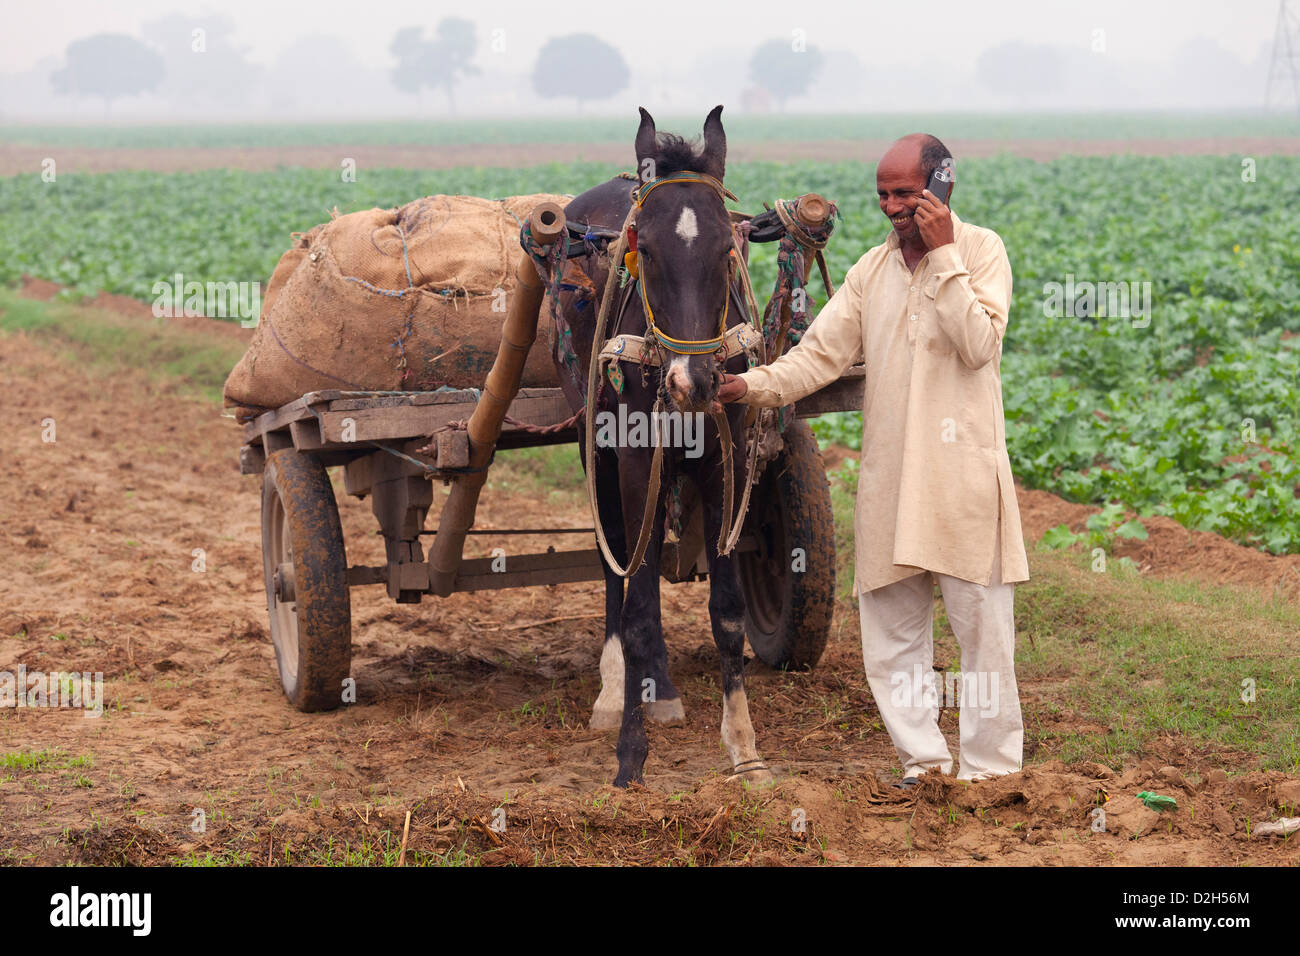 L'Inde, Uttar Pradesh, agriculteur conduisant le cheval et panier dans le champ pendant l'utilisation de téléphone mobile Banque D'Images